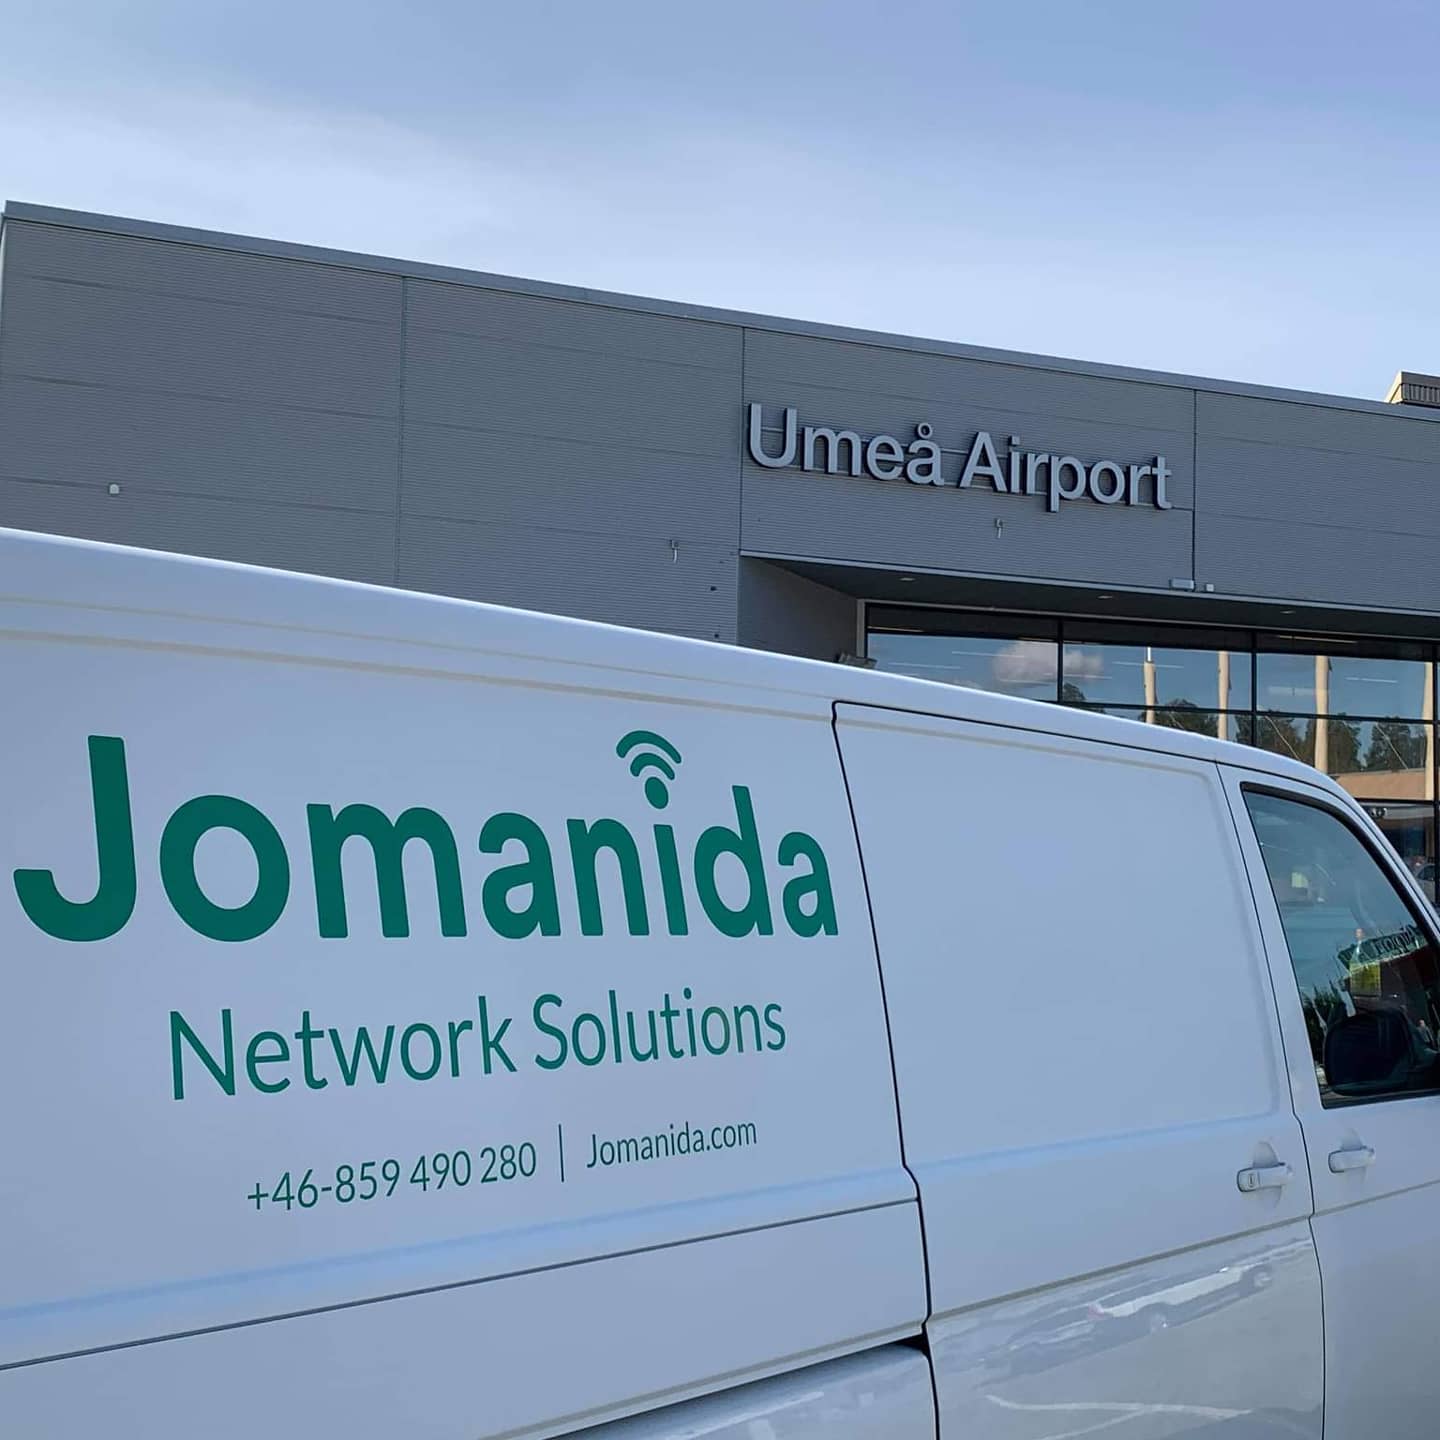 Jomanida utför nätverksinstallationer för flygplatser